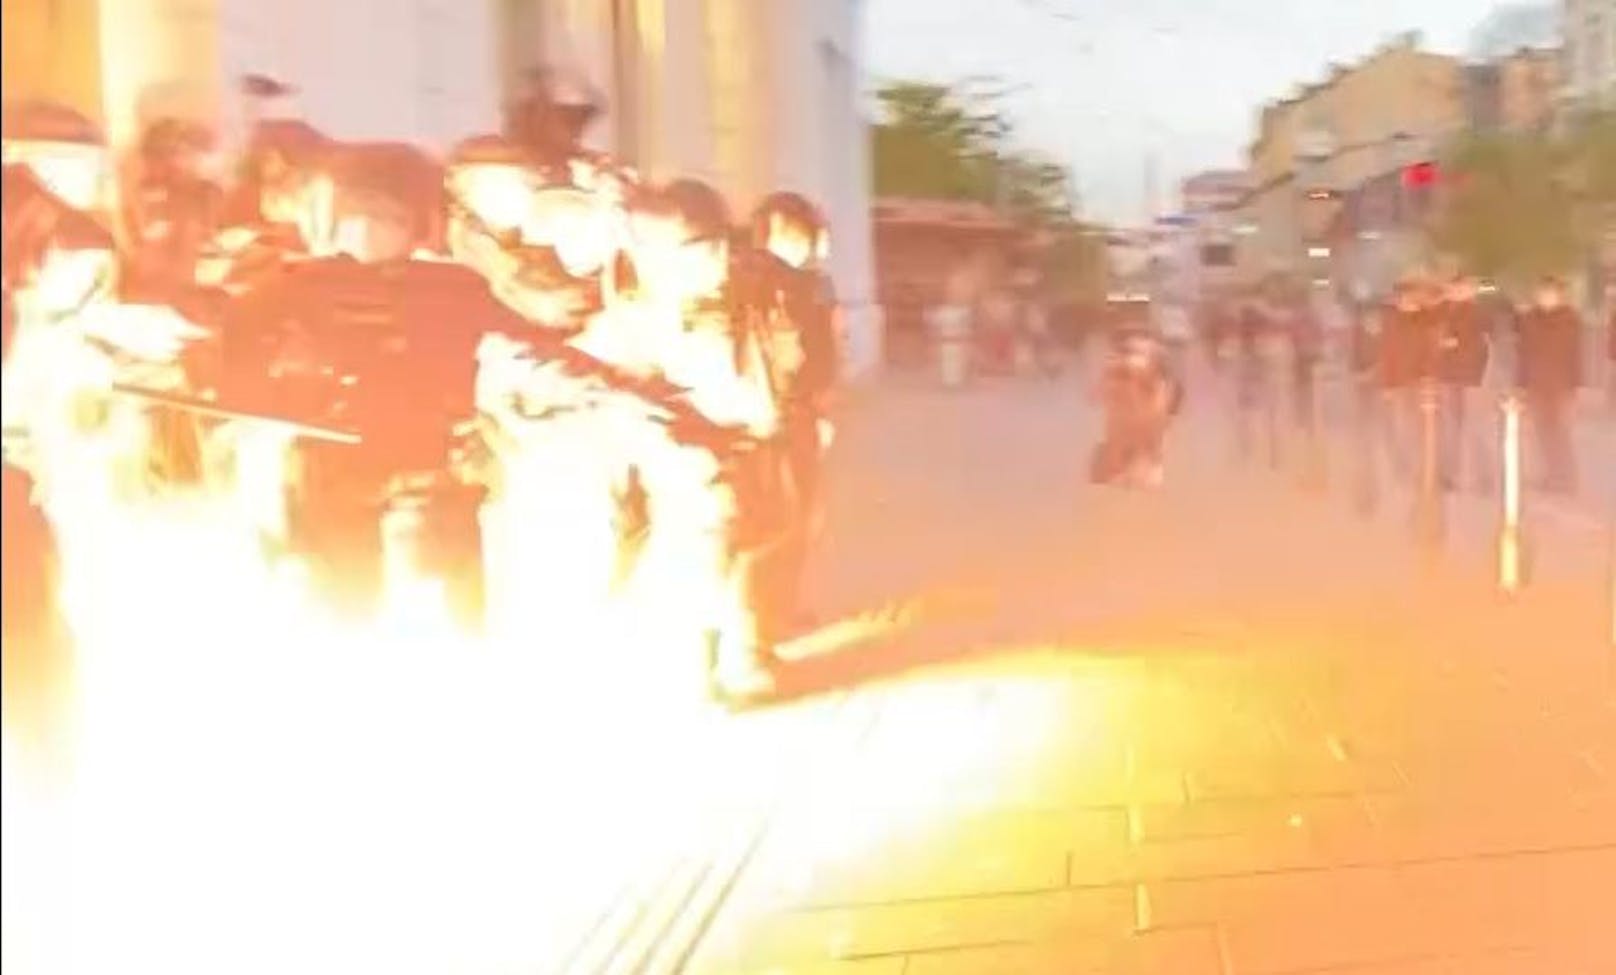 Die Szene zeigt einen explodierenden pyrotechnischen Gegenstand, der auf die Polizei geworfen wurde.